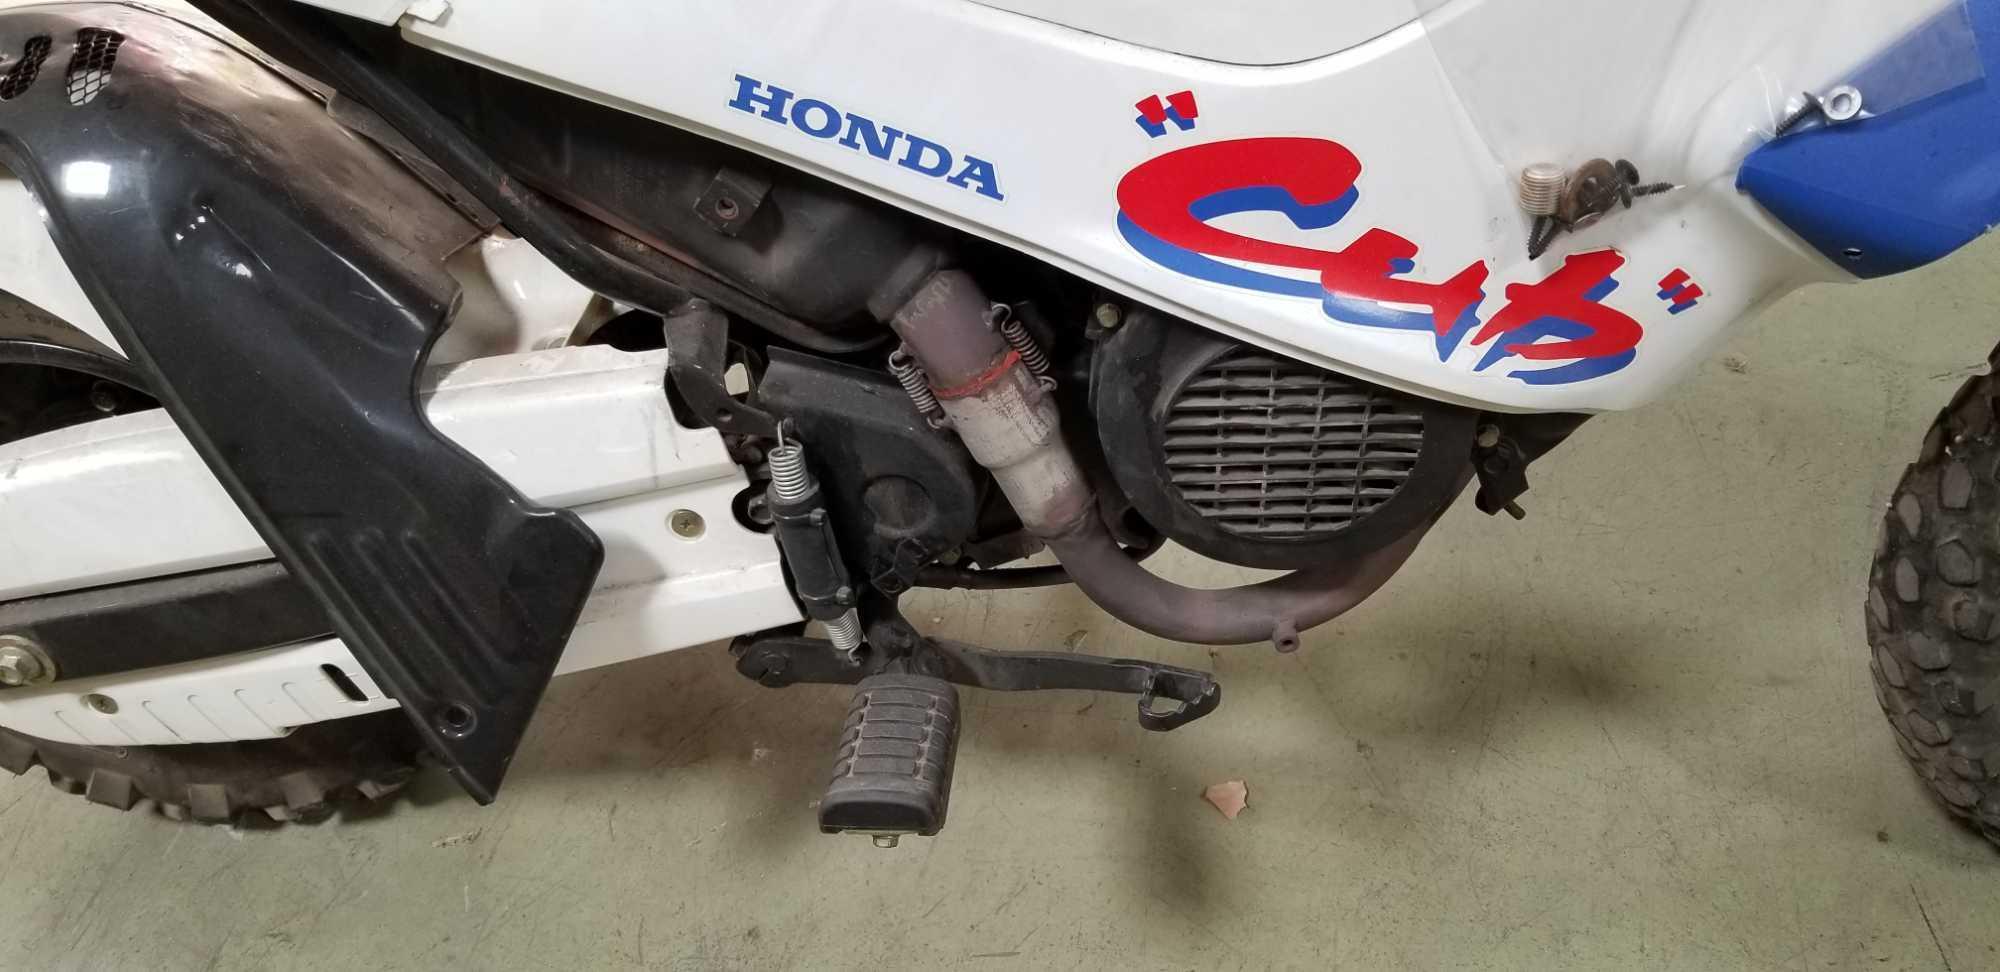 Honda Mini Motorcycle The Cub